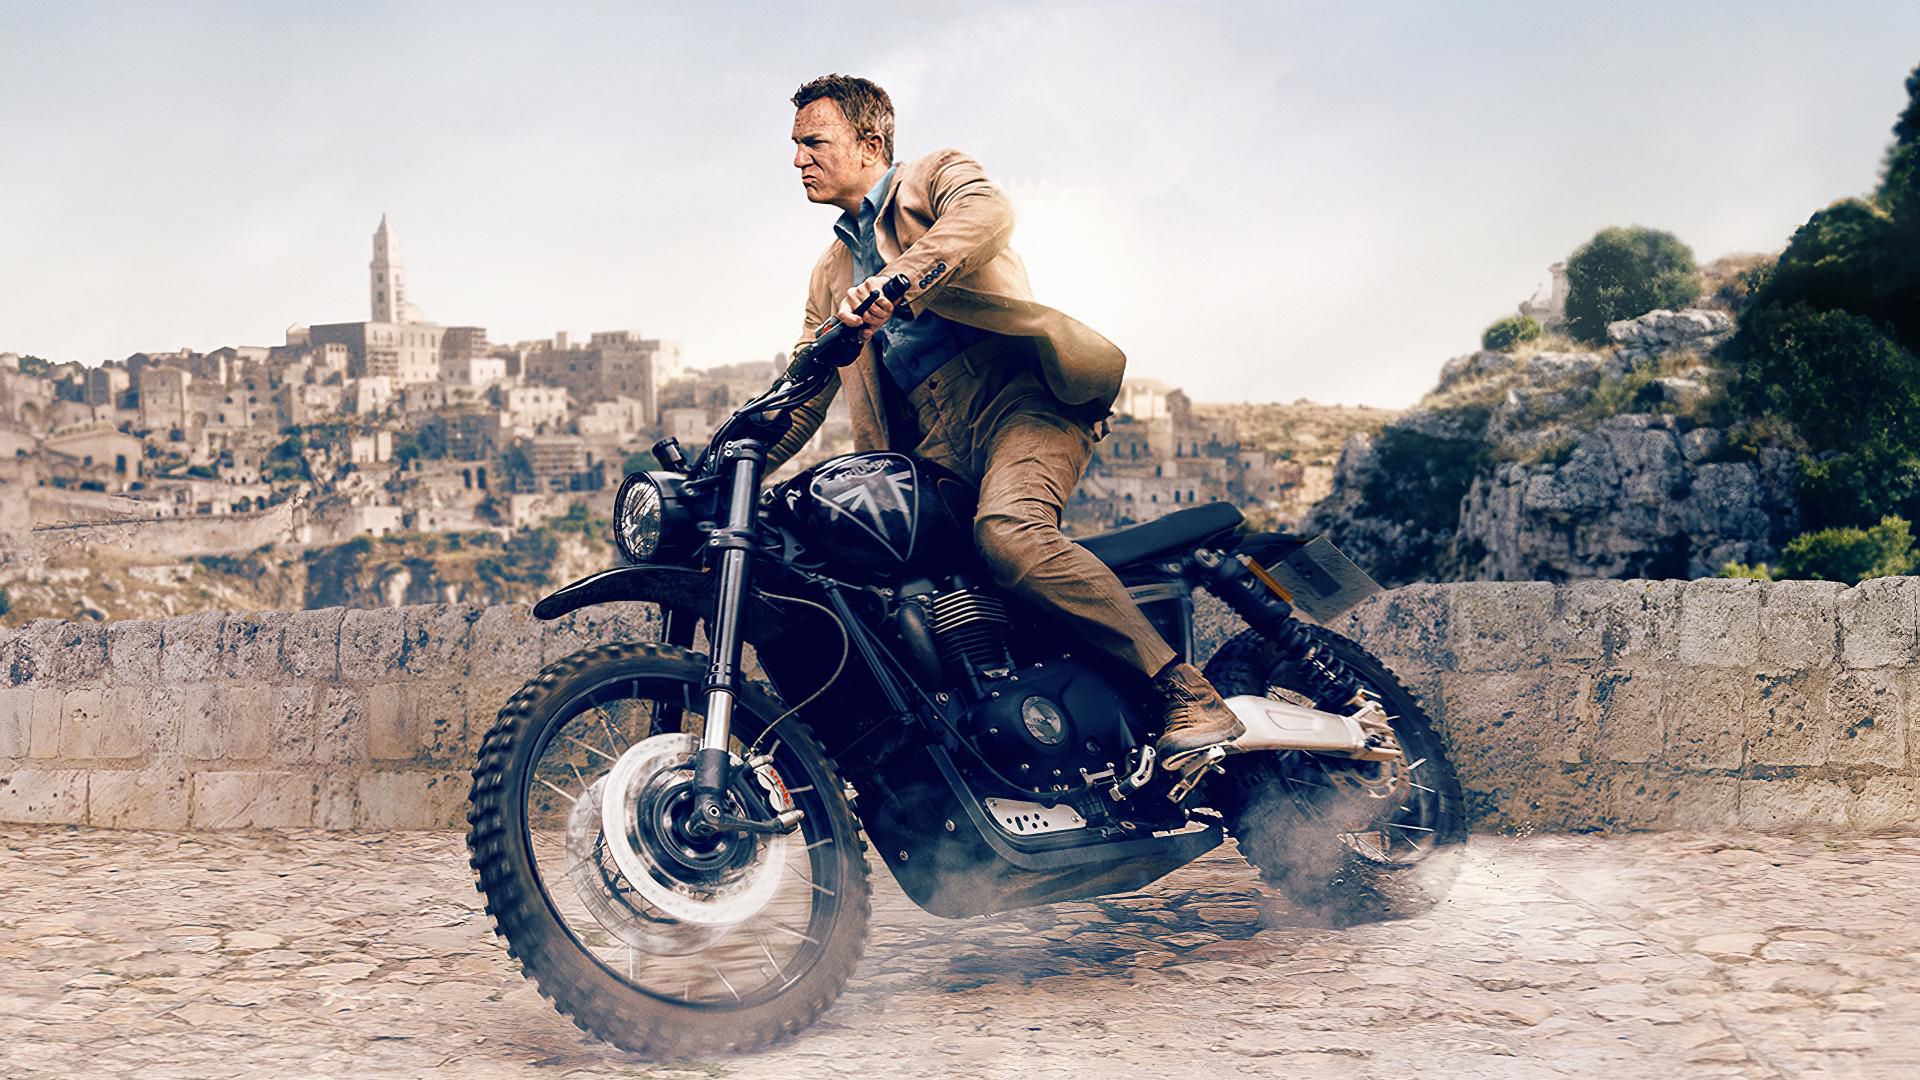 دنیل کریگ در نقش جیمز باند سوار بر موتورسیکلت در فیلم No Time To Die